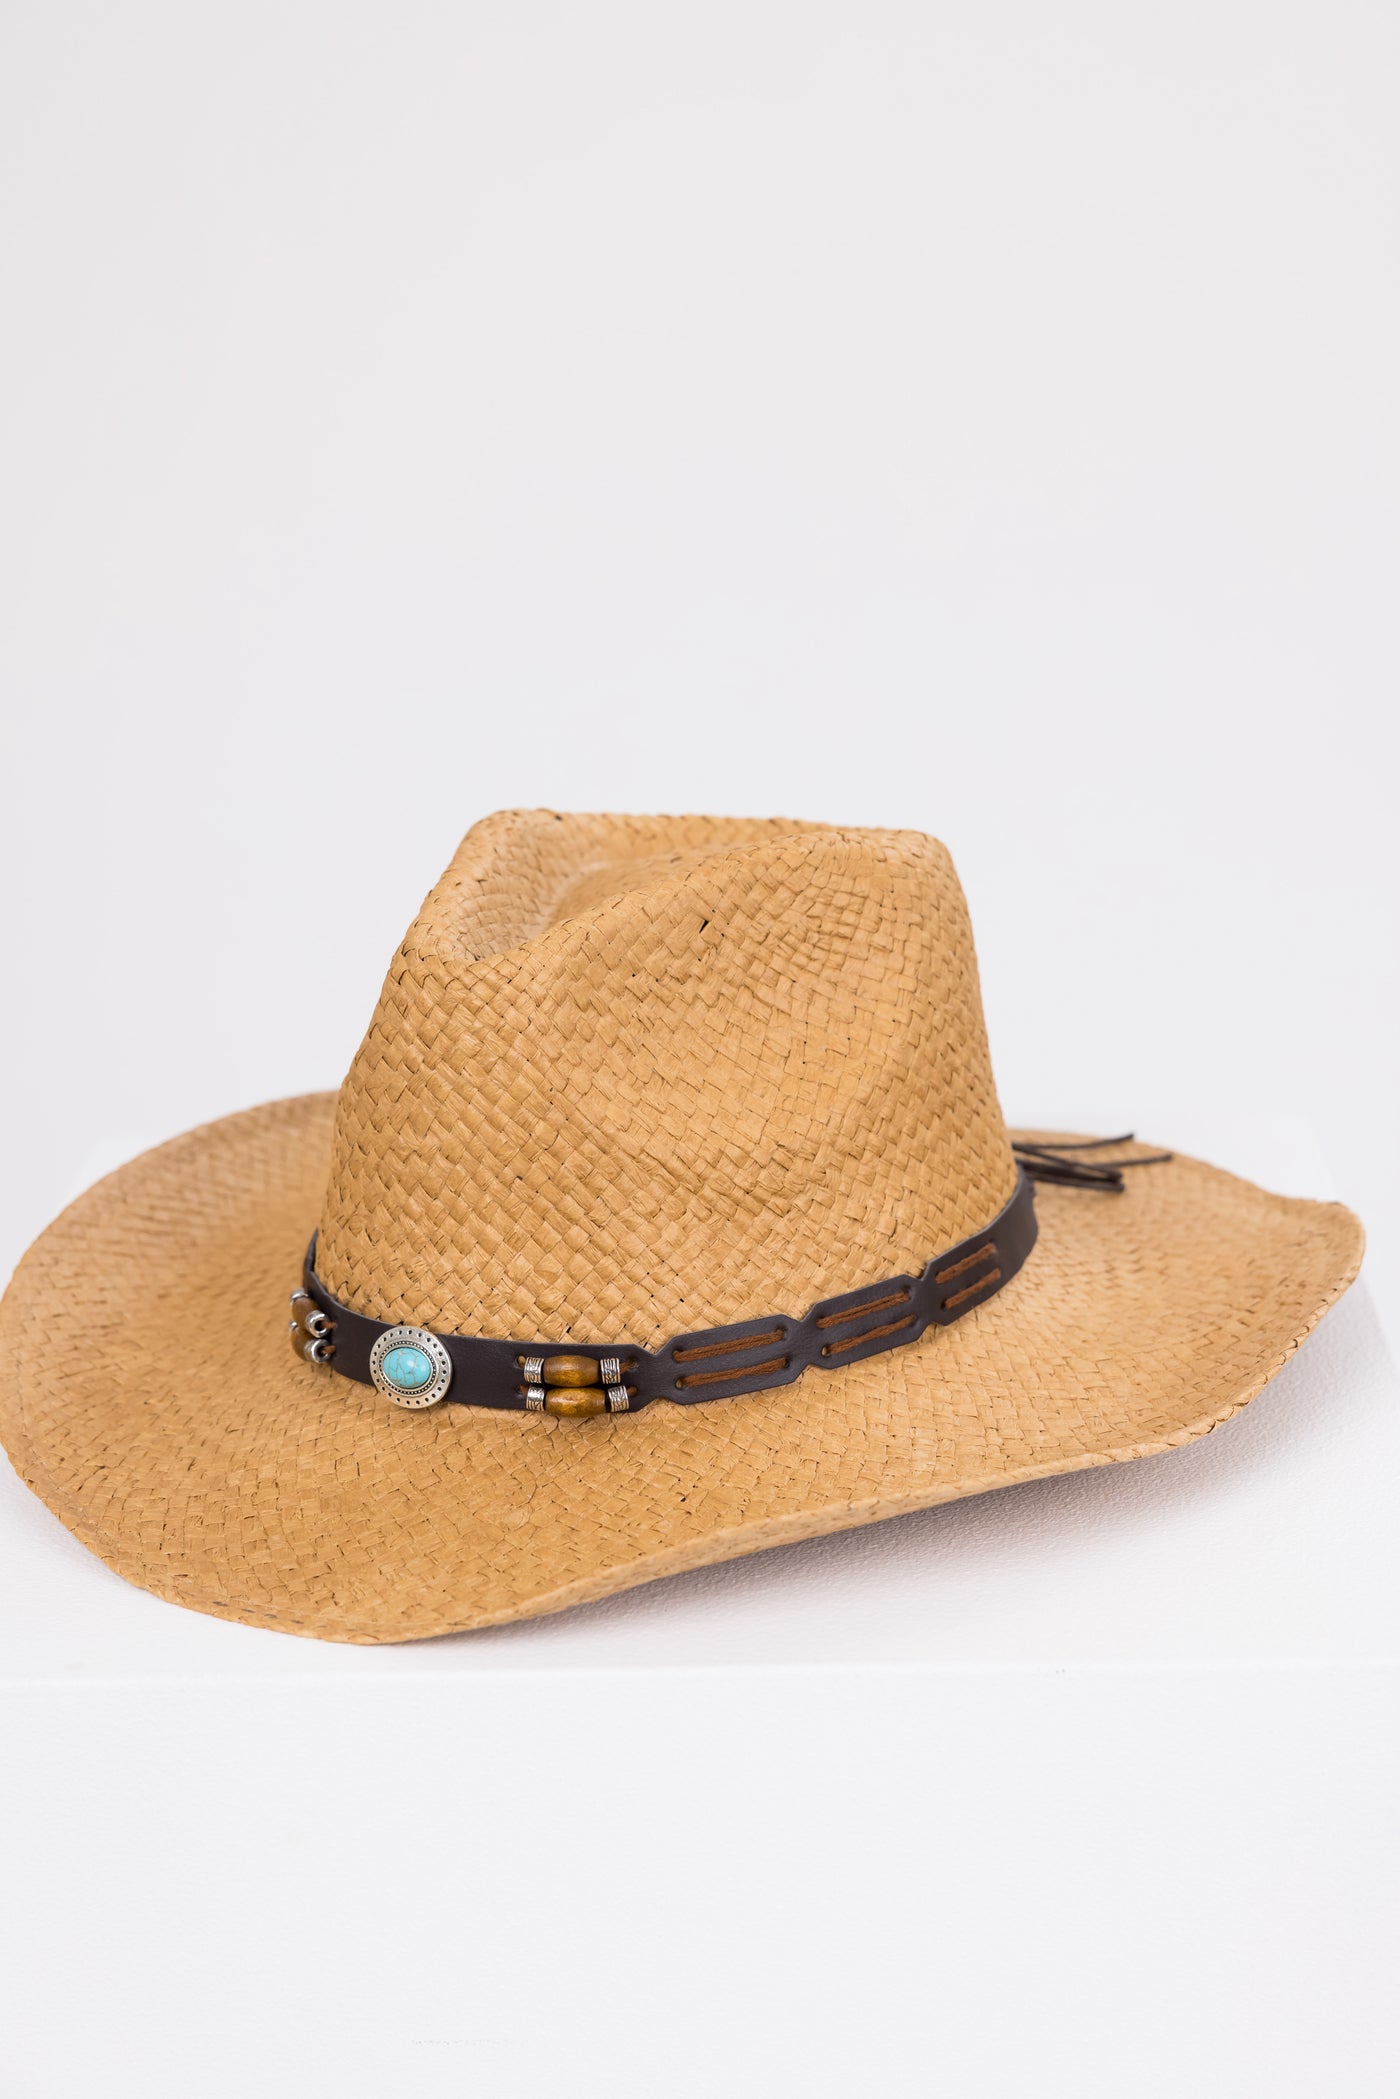 Brown Sugar Pleather Strap Western Straw Hat